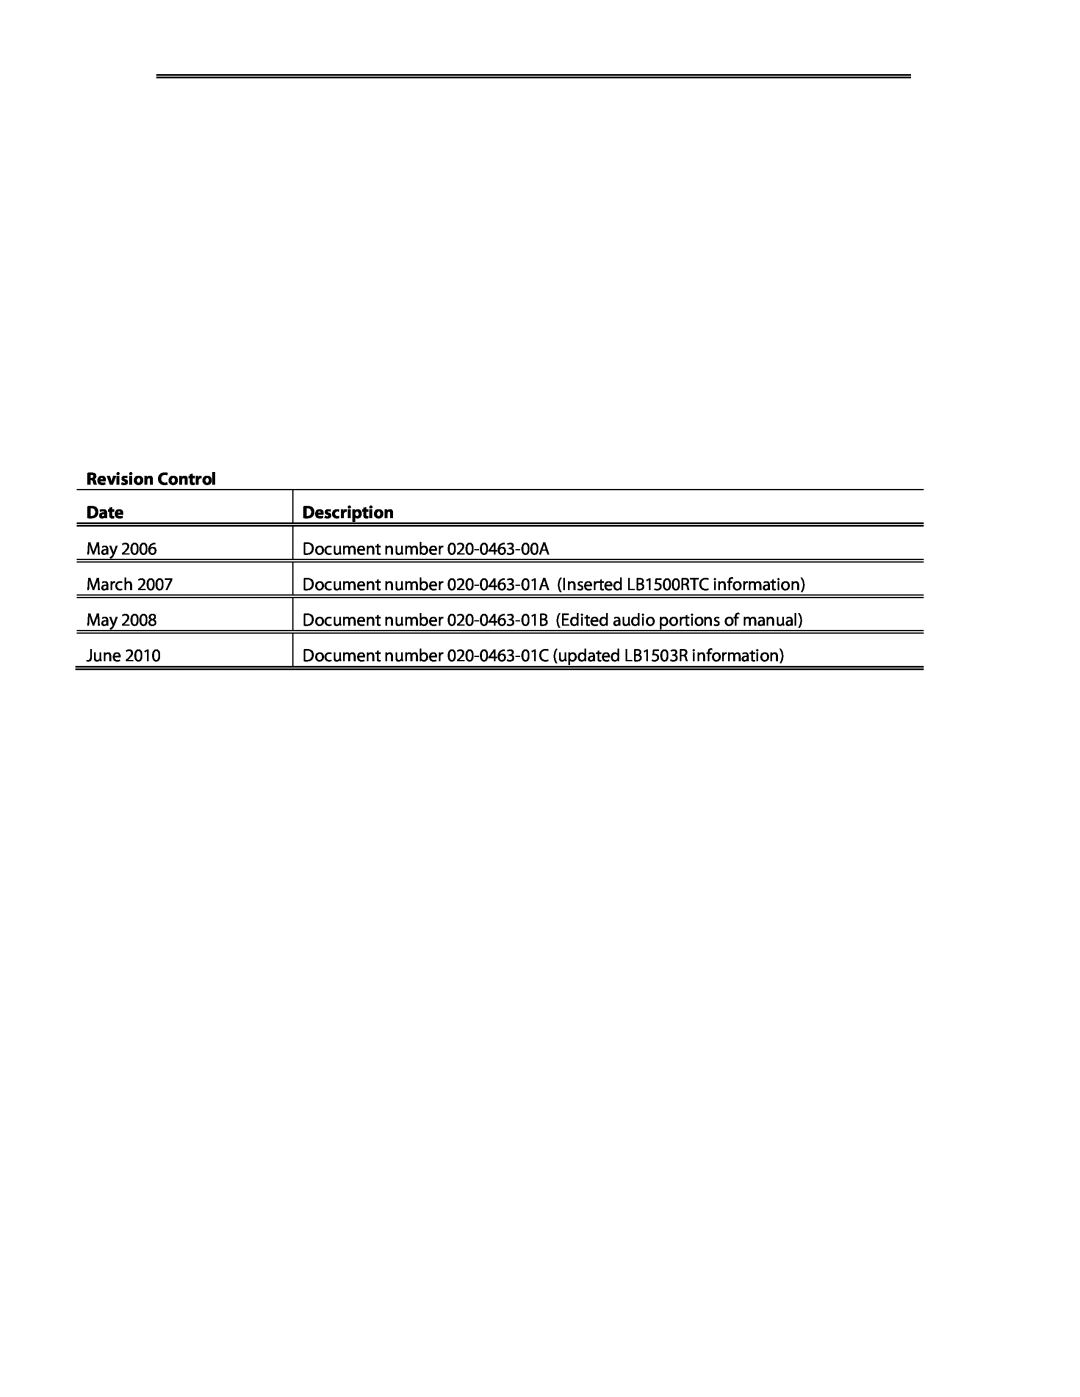 Planar LB1503R, LB1500RTC manual Revision Control, Date, Description, Document number 020-0463-00A, March, June 